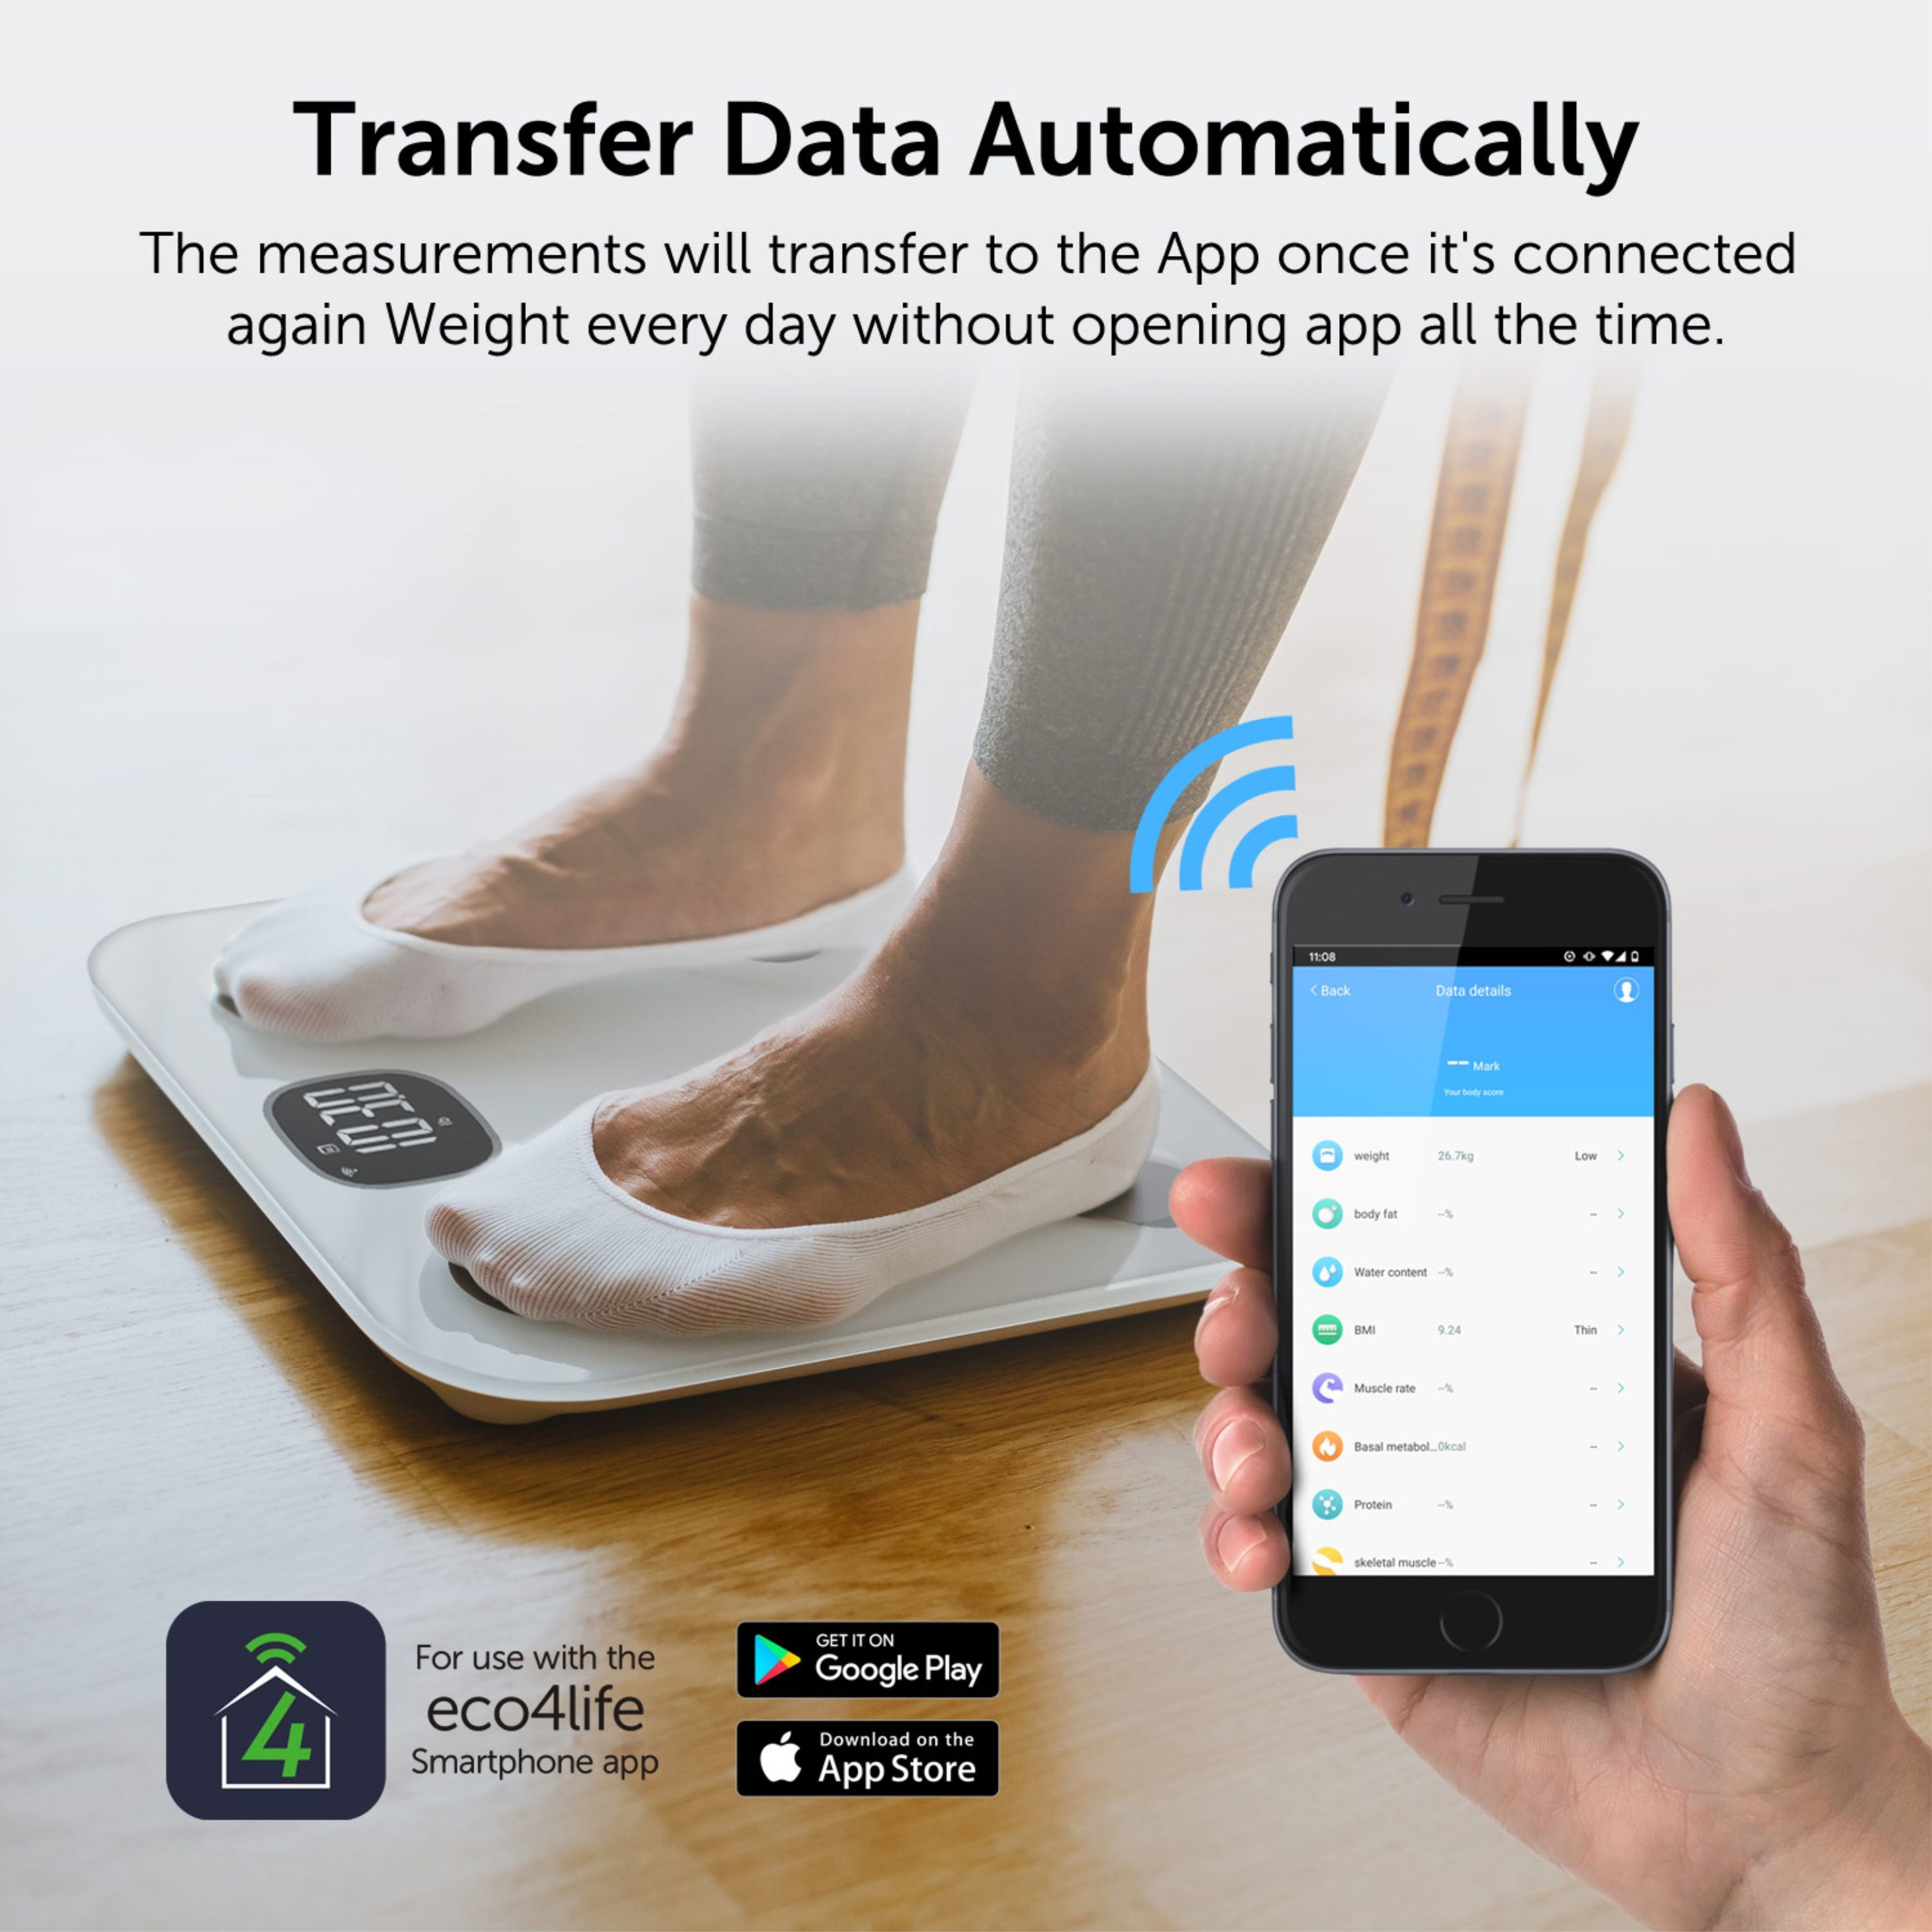 PICOOC Smart Scale for Body Weight Bathroom Digital BMI Scale w/ Bluetooth  19